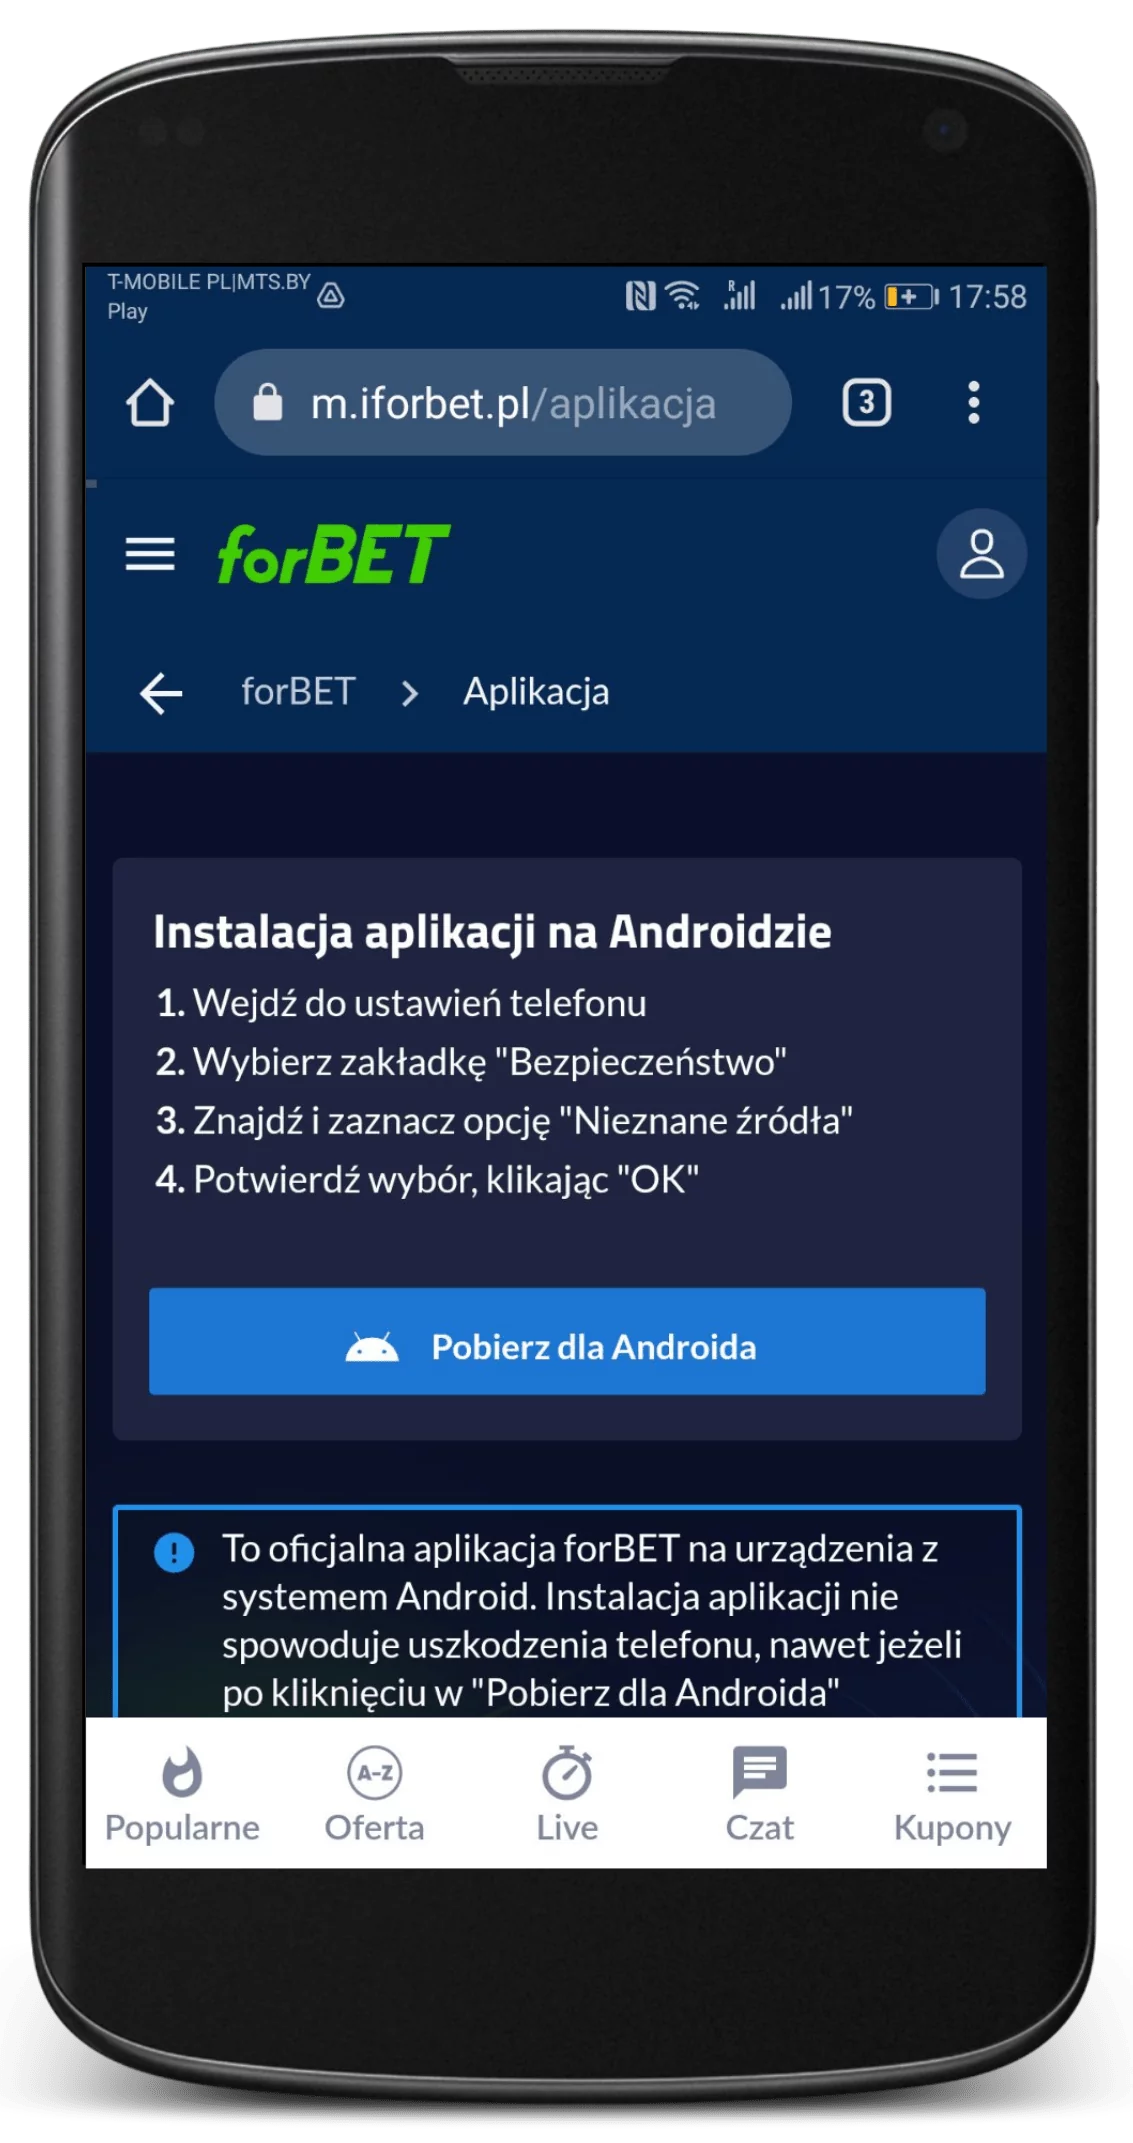 Rozdział aplikacji mobilnej na stronie oficjalnej bukmachera Forbet - kliknij pobierz aplikację na Android